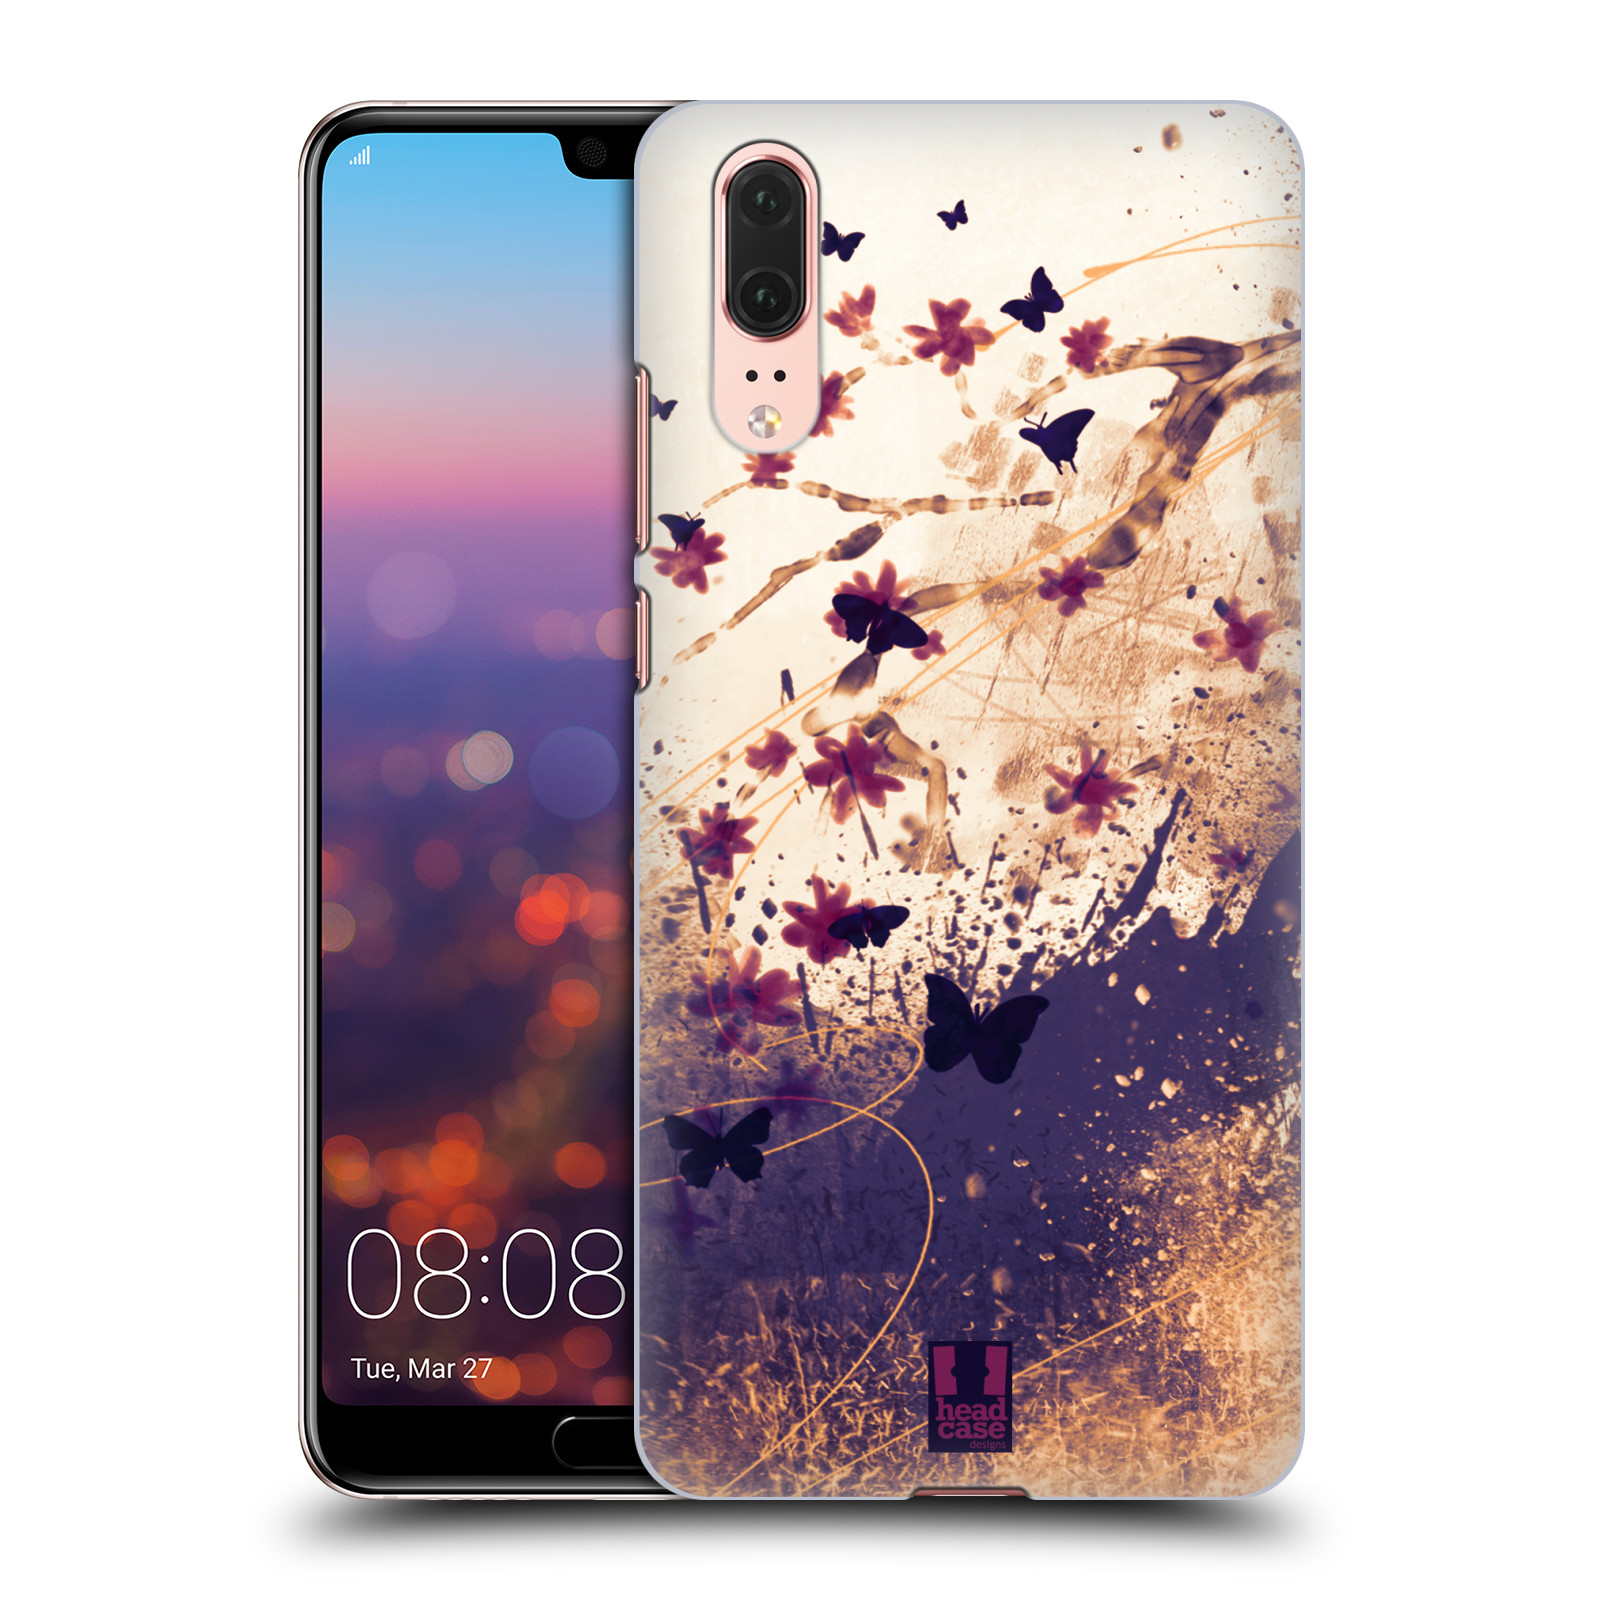 Zadní obal pro mobil Huawei P20 - HEAD CASE - Barevné květy a motýlci